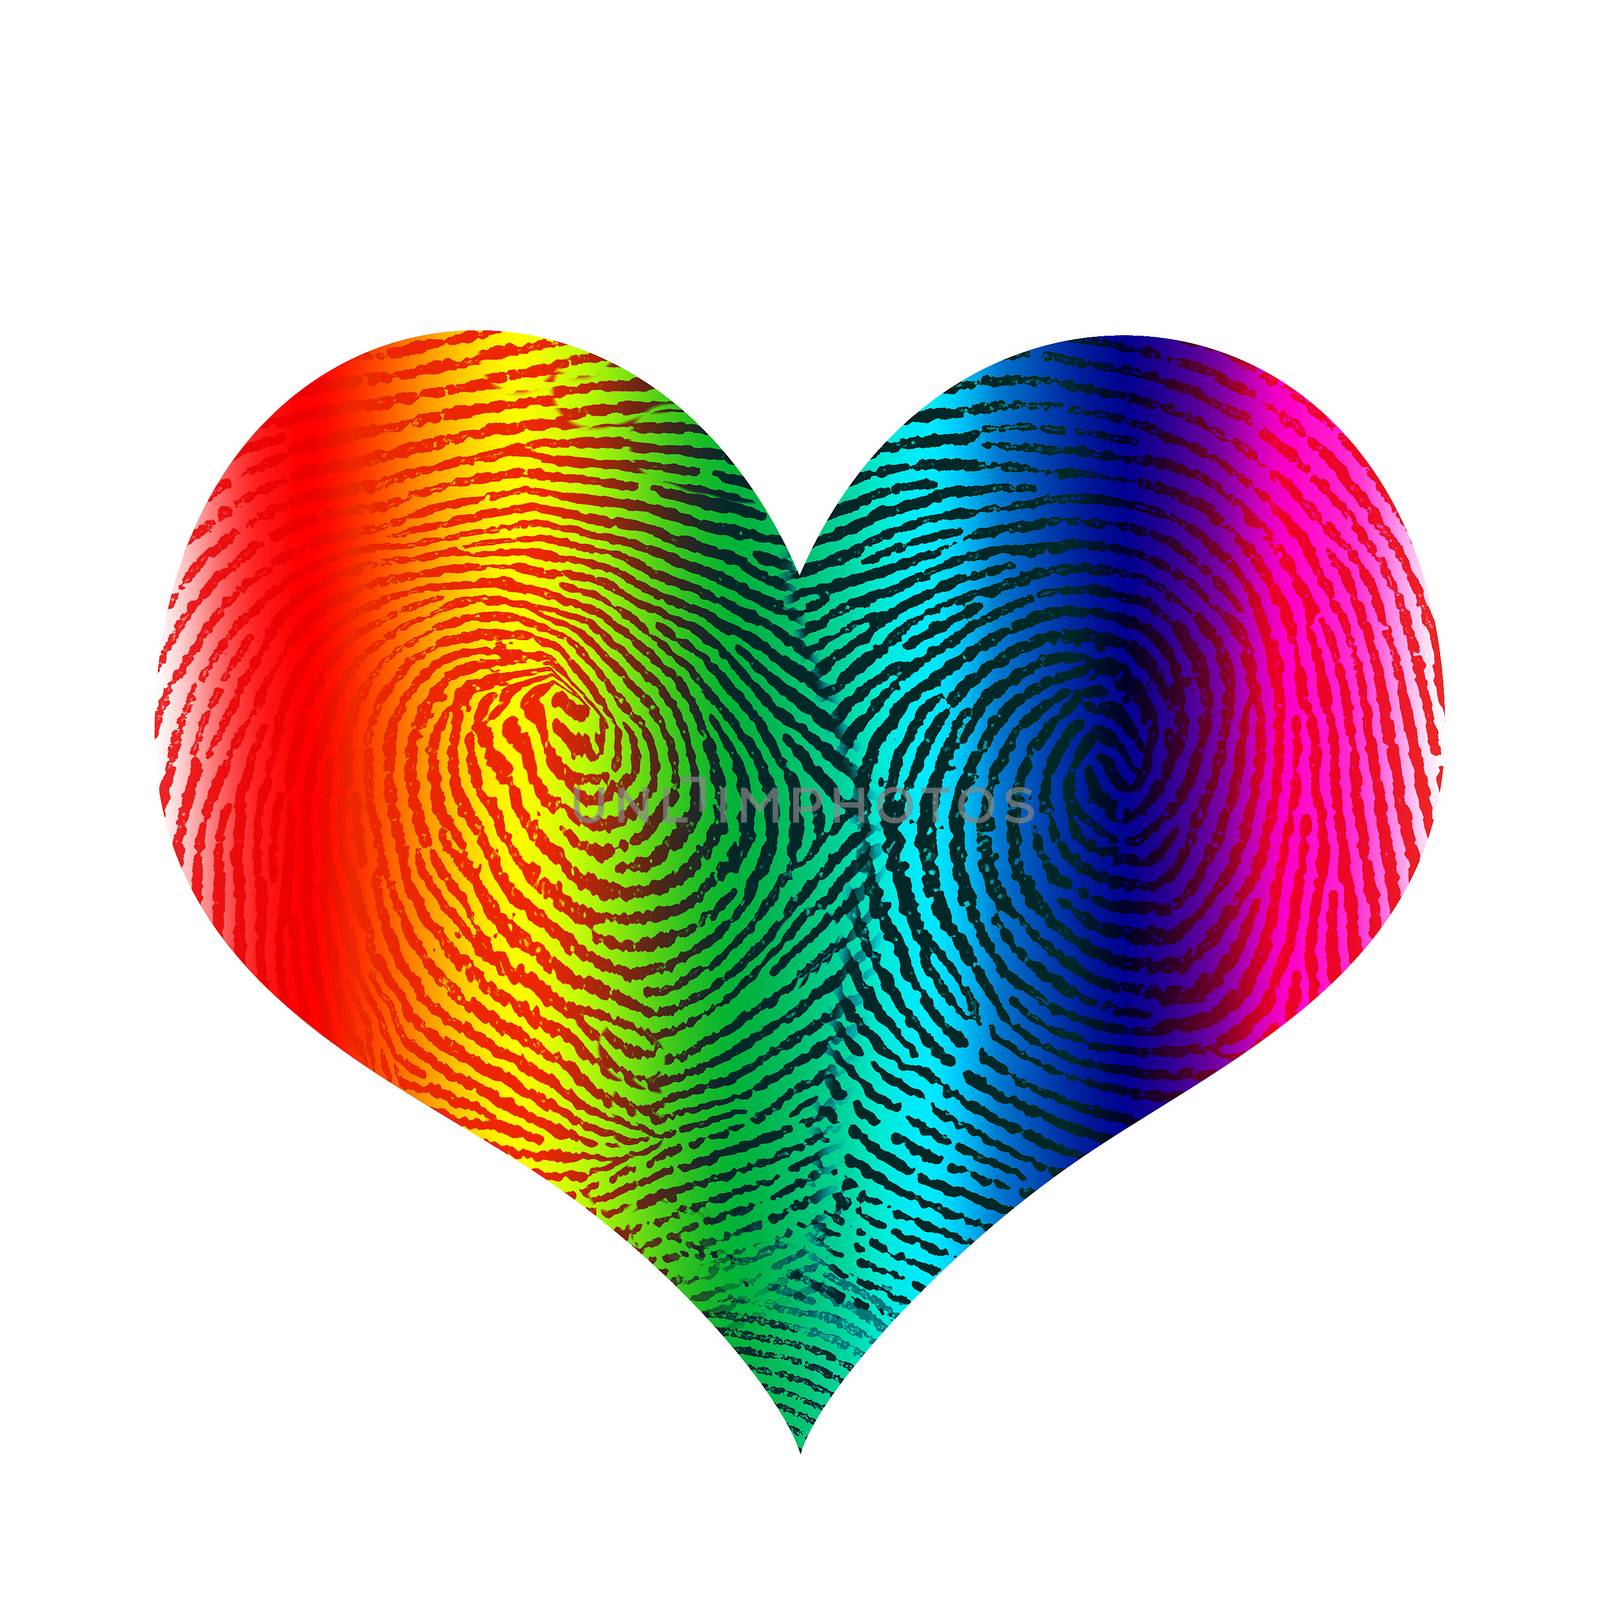 Rainbow fingerprint in heart shape by applesstock